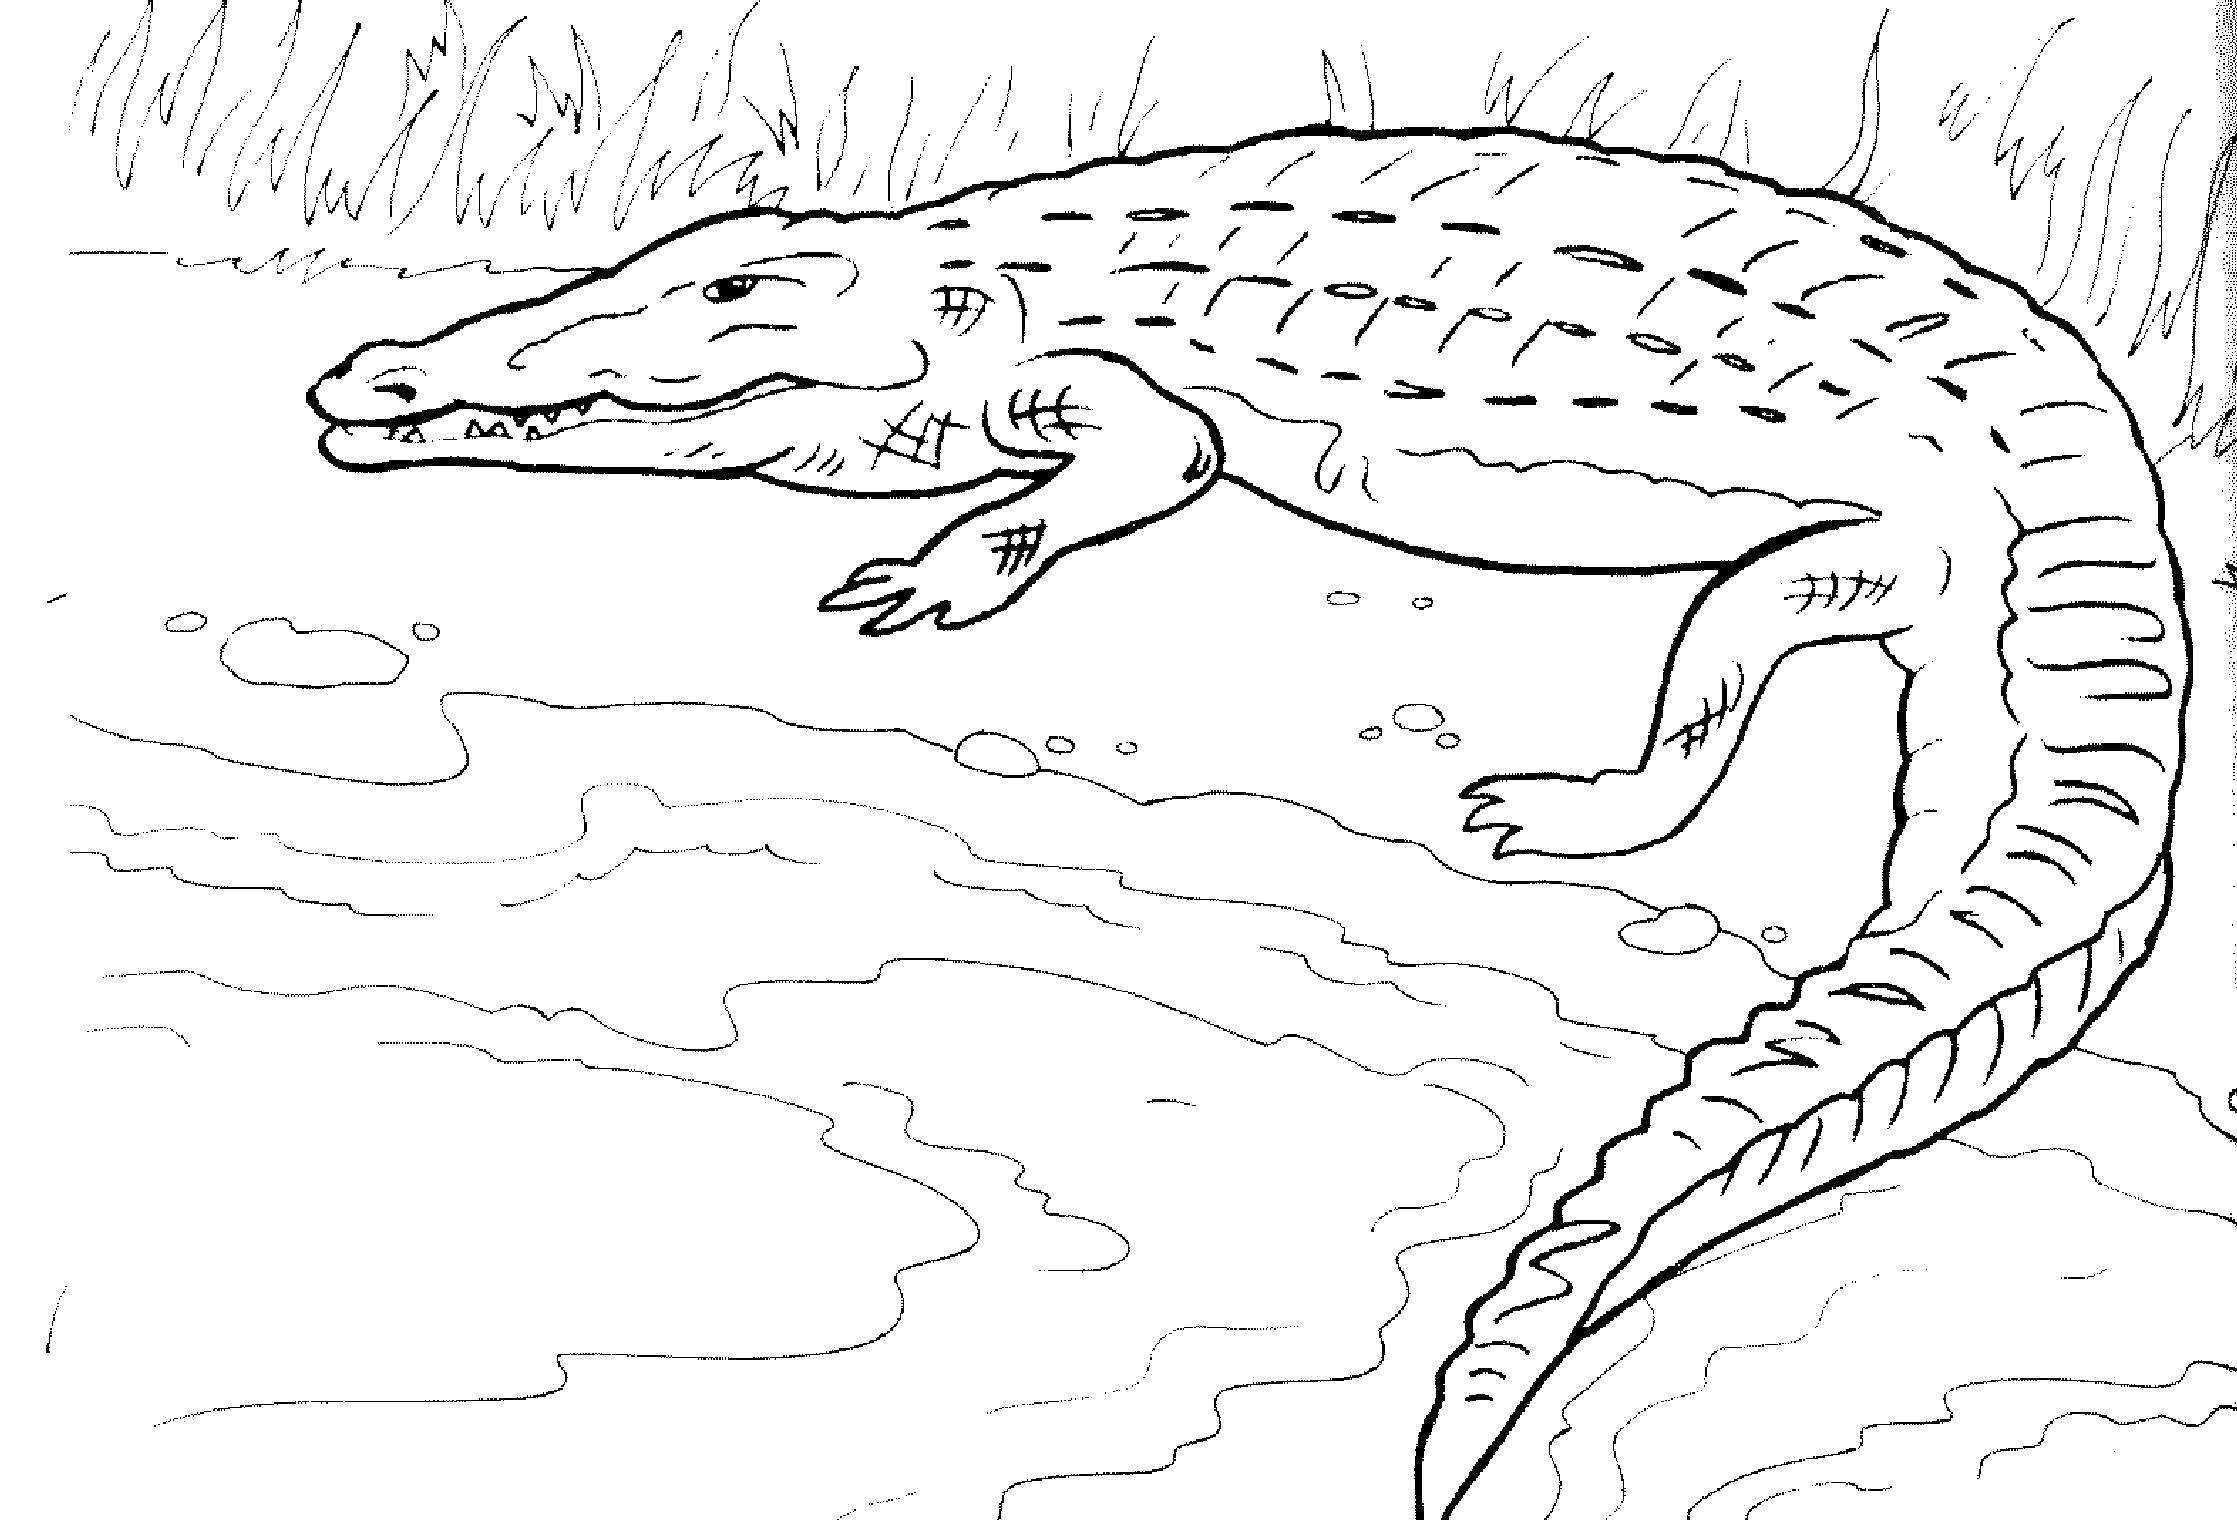 Coloring Crocodile. Category reptiles. Tags:  Reptile, crocodile.